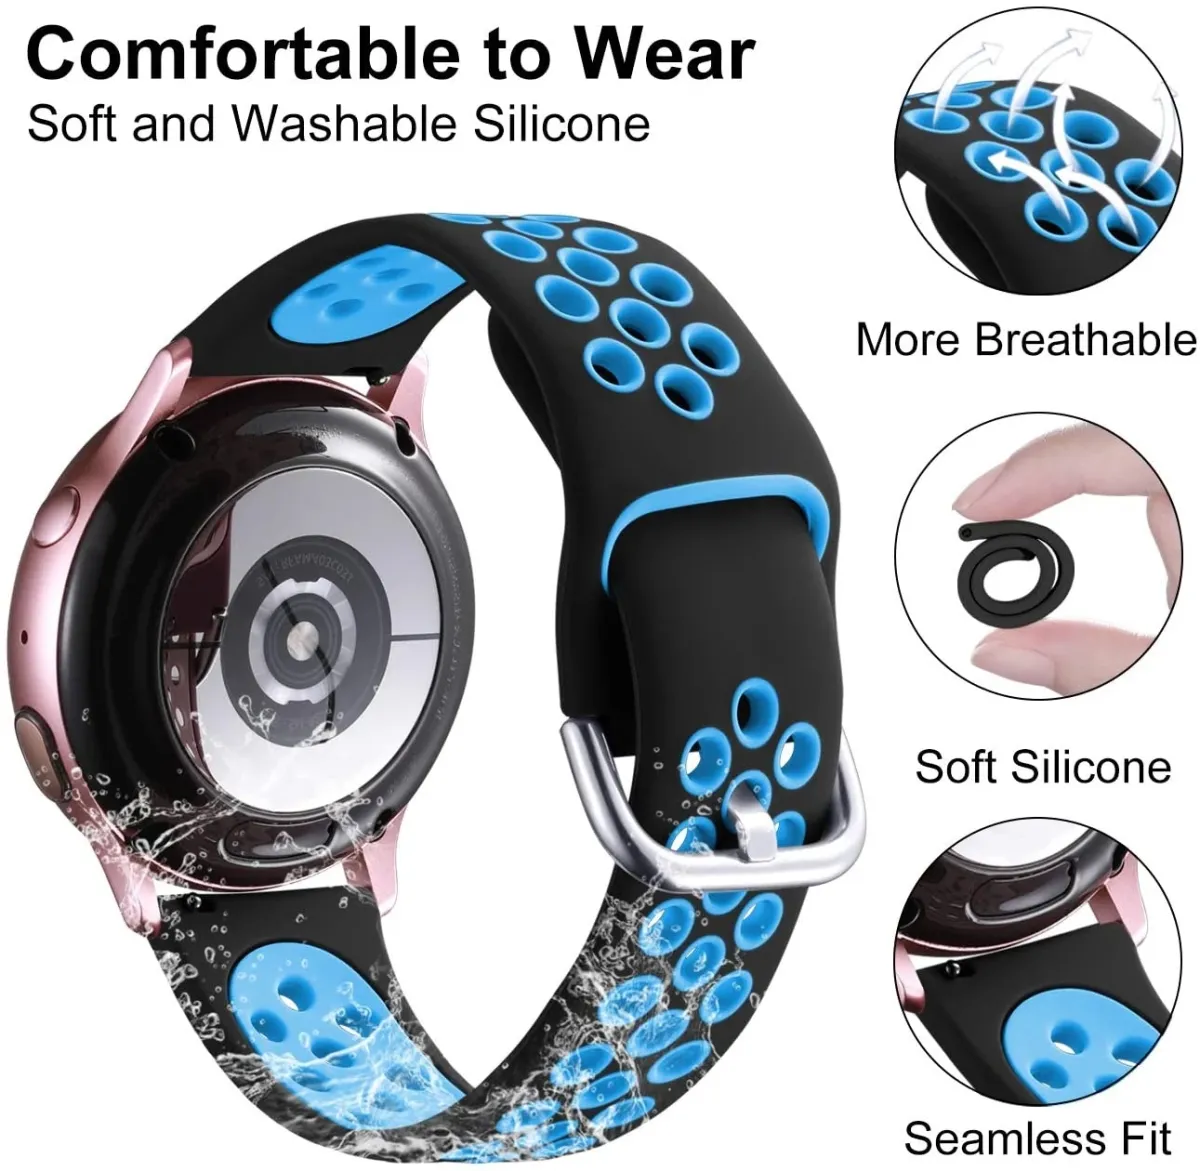 Dây đeo cho Samsung Galaxy Watch 3 sẽ giúp bạn đổi mới phong cách và tôn lên sự sang trọng cho chiếc đồng hồ của mình. Với nhiều màu sắc và chất liệu đa dạng, bạn sẽ dễ dàng tìm được một dây đeo phù hợp với phong cách và sở thích của mình.